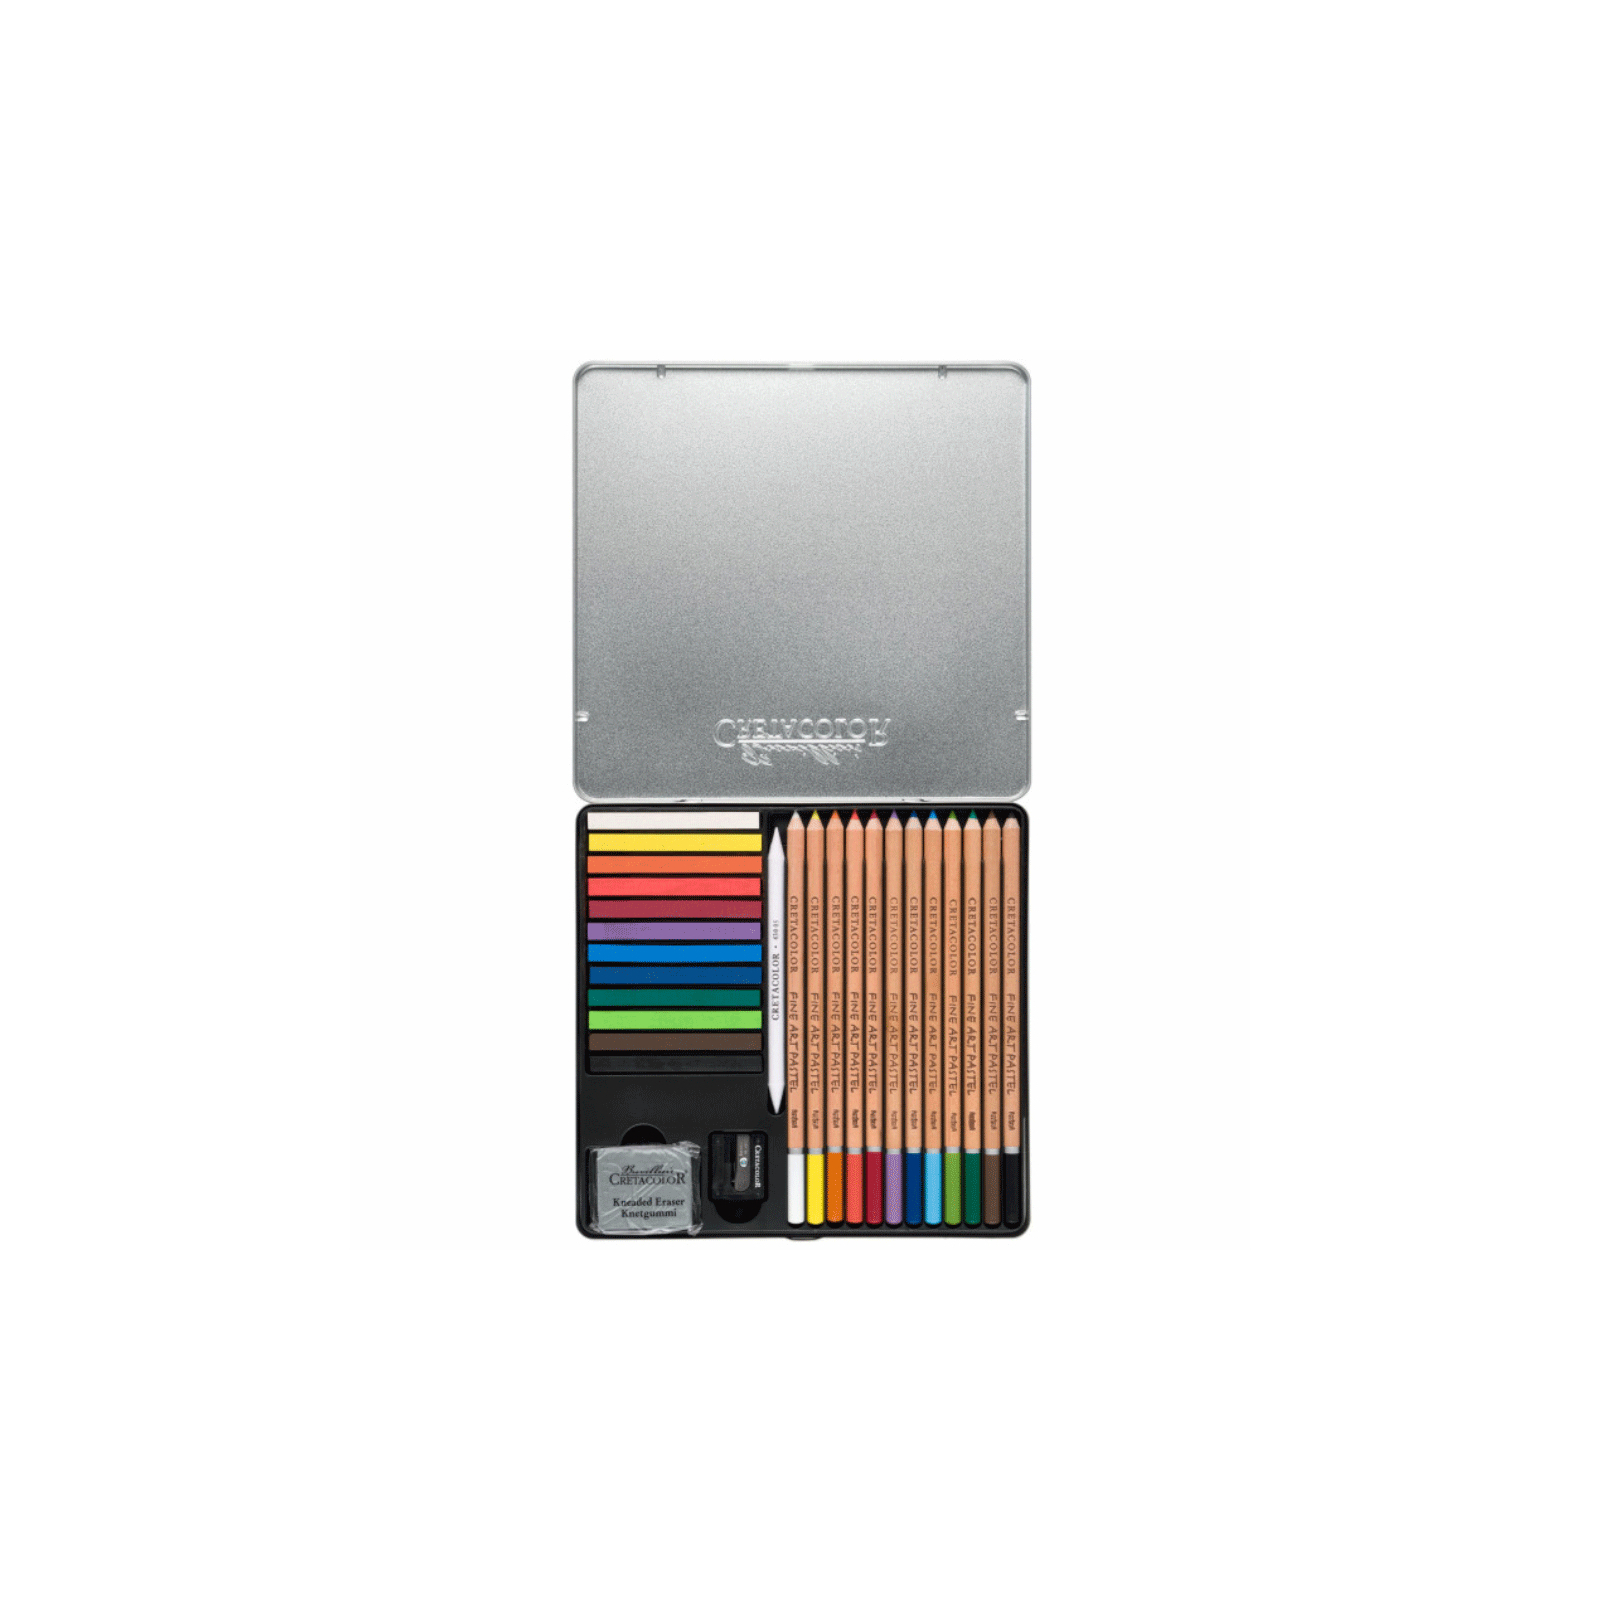 Художественный набор Cretacolor THE PASTEL BASIC BOX, пастели и карандашей 27 предметов (9014400325190) изображение 3